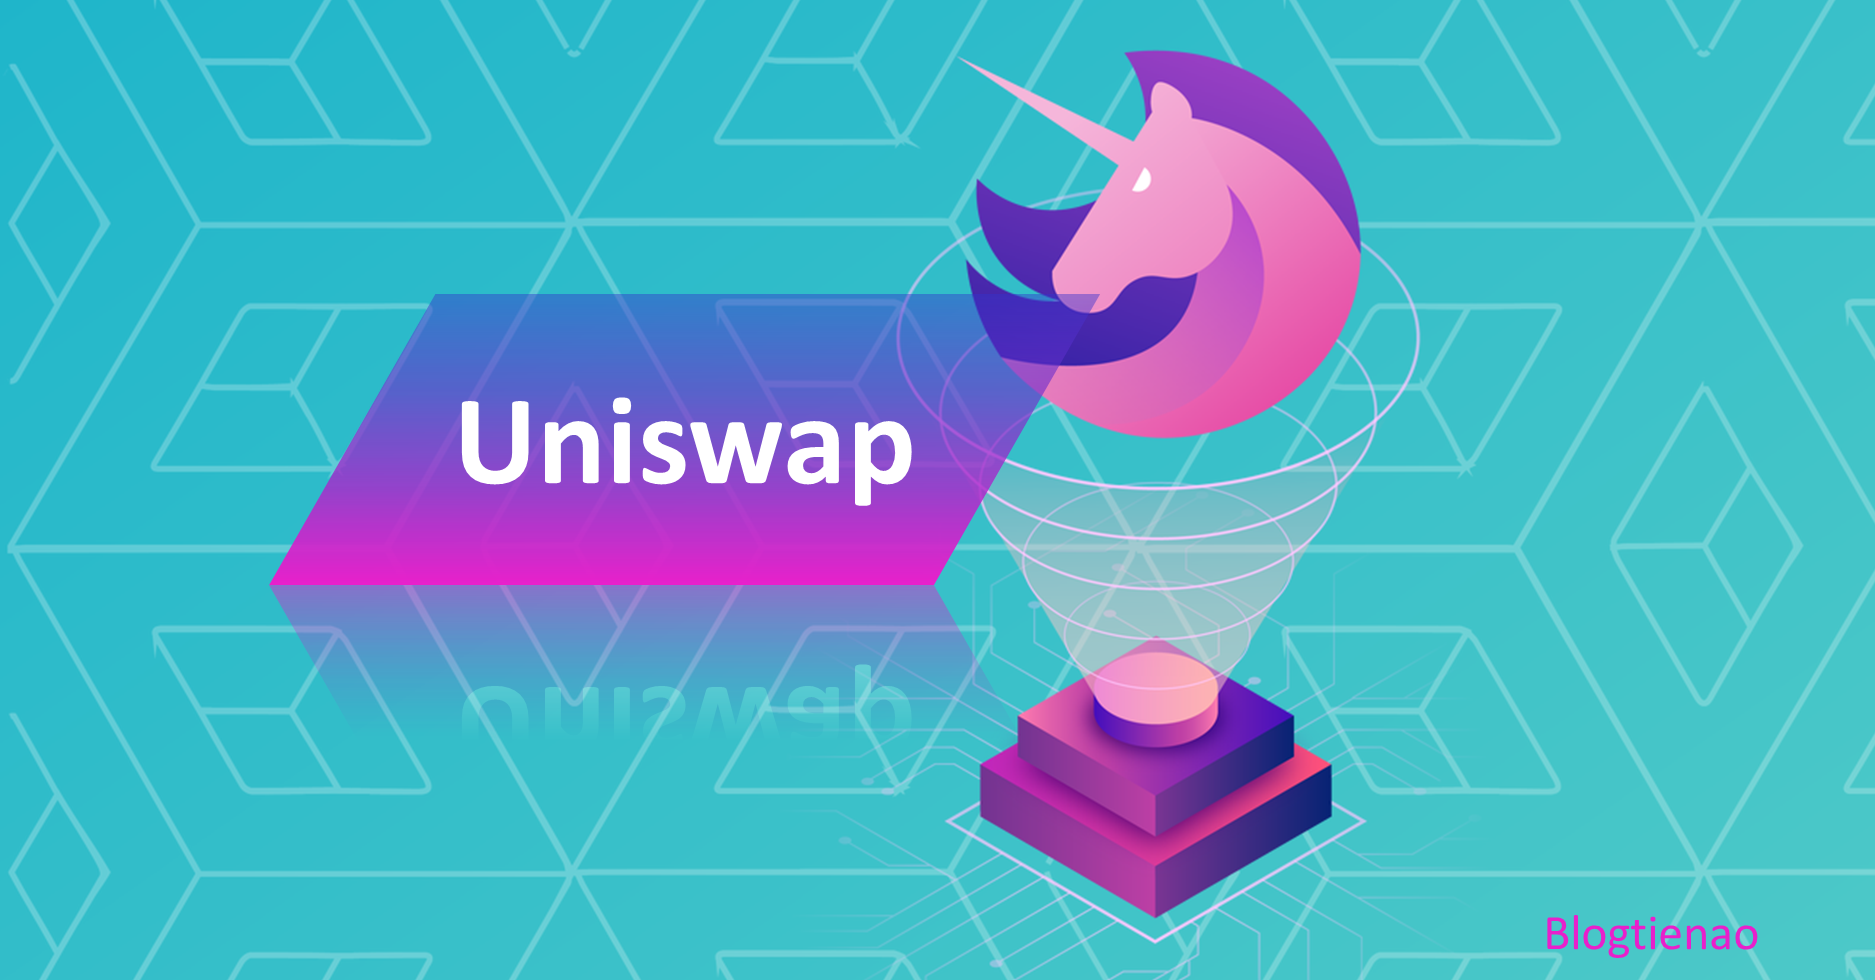 uniswap là gì